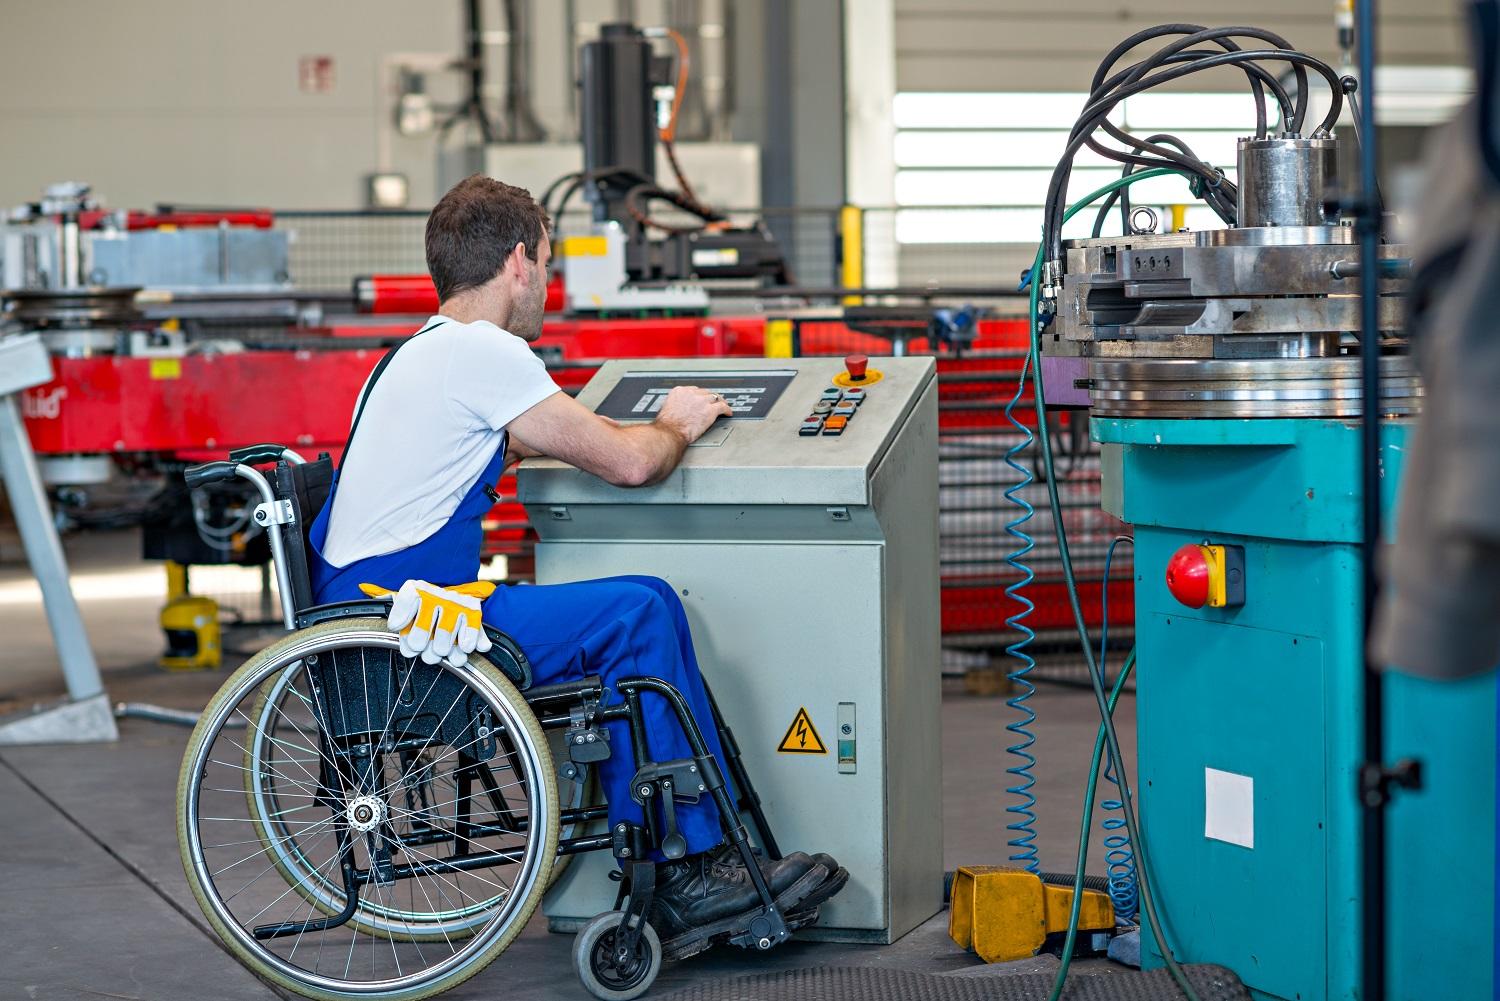 عامل يعاني إعاقة حركية يعمل في أحد المصانع. Shutterstock  